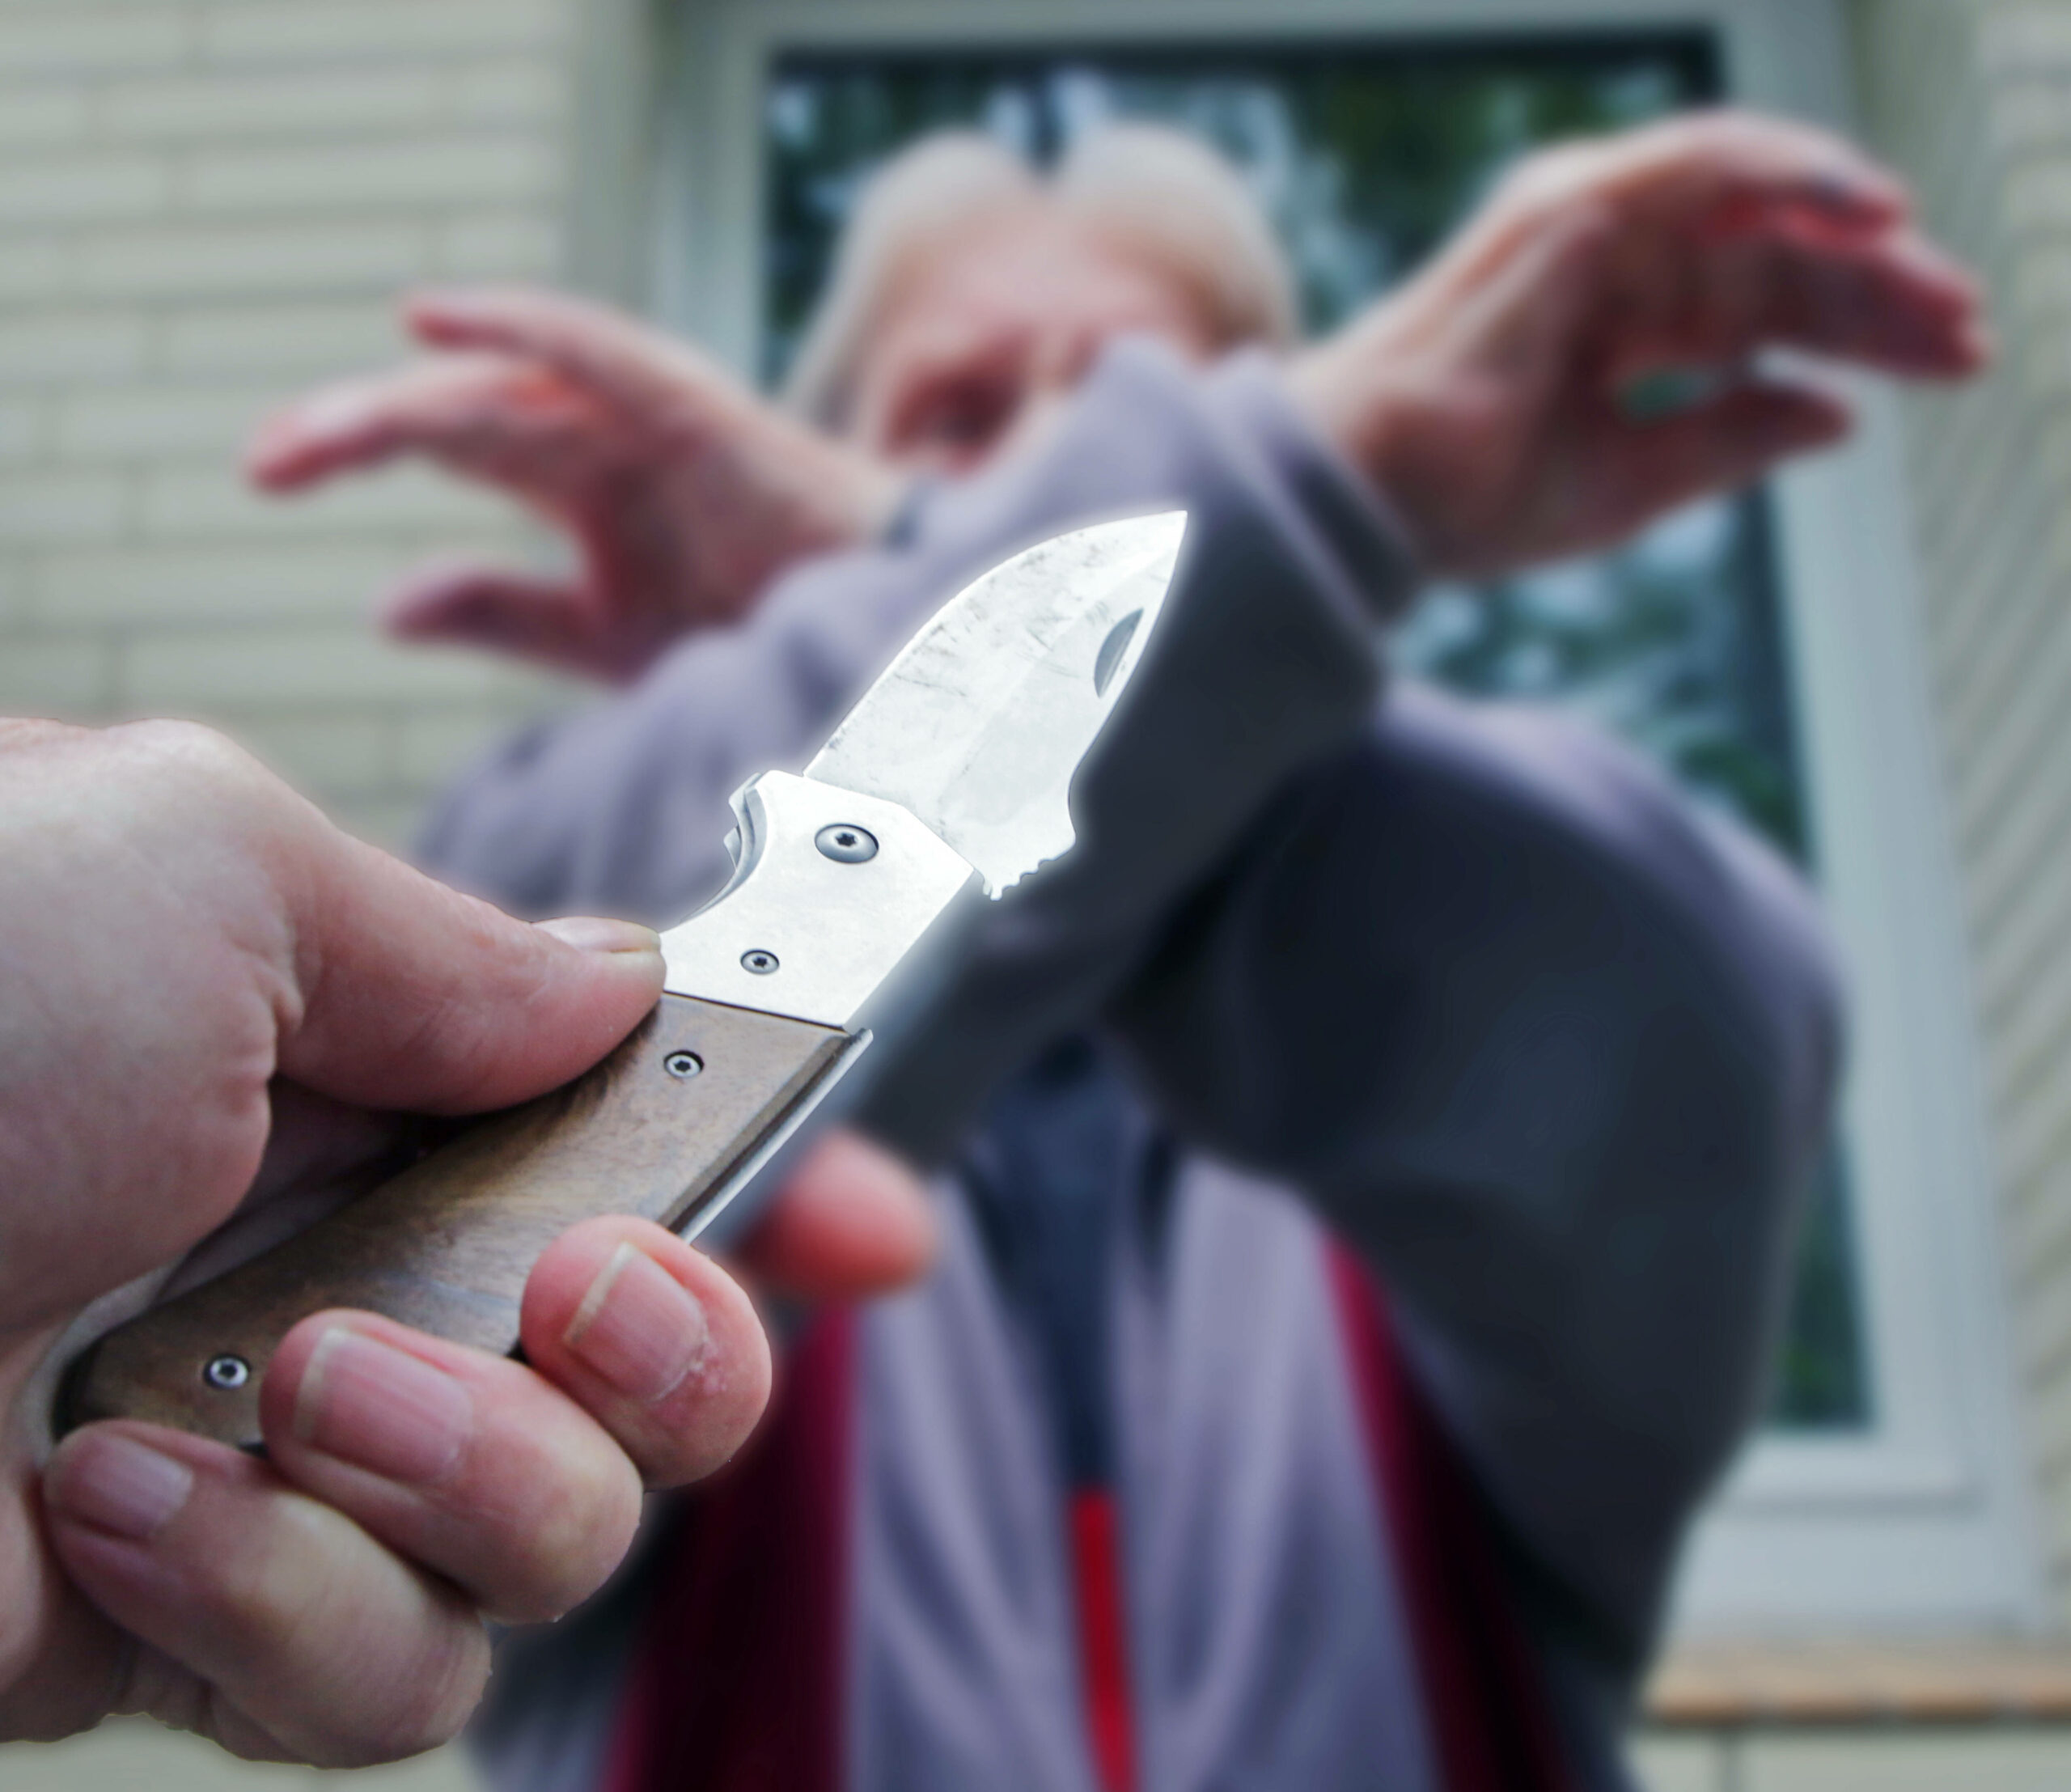 Messerattacke auf einen älteren Mann.